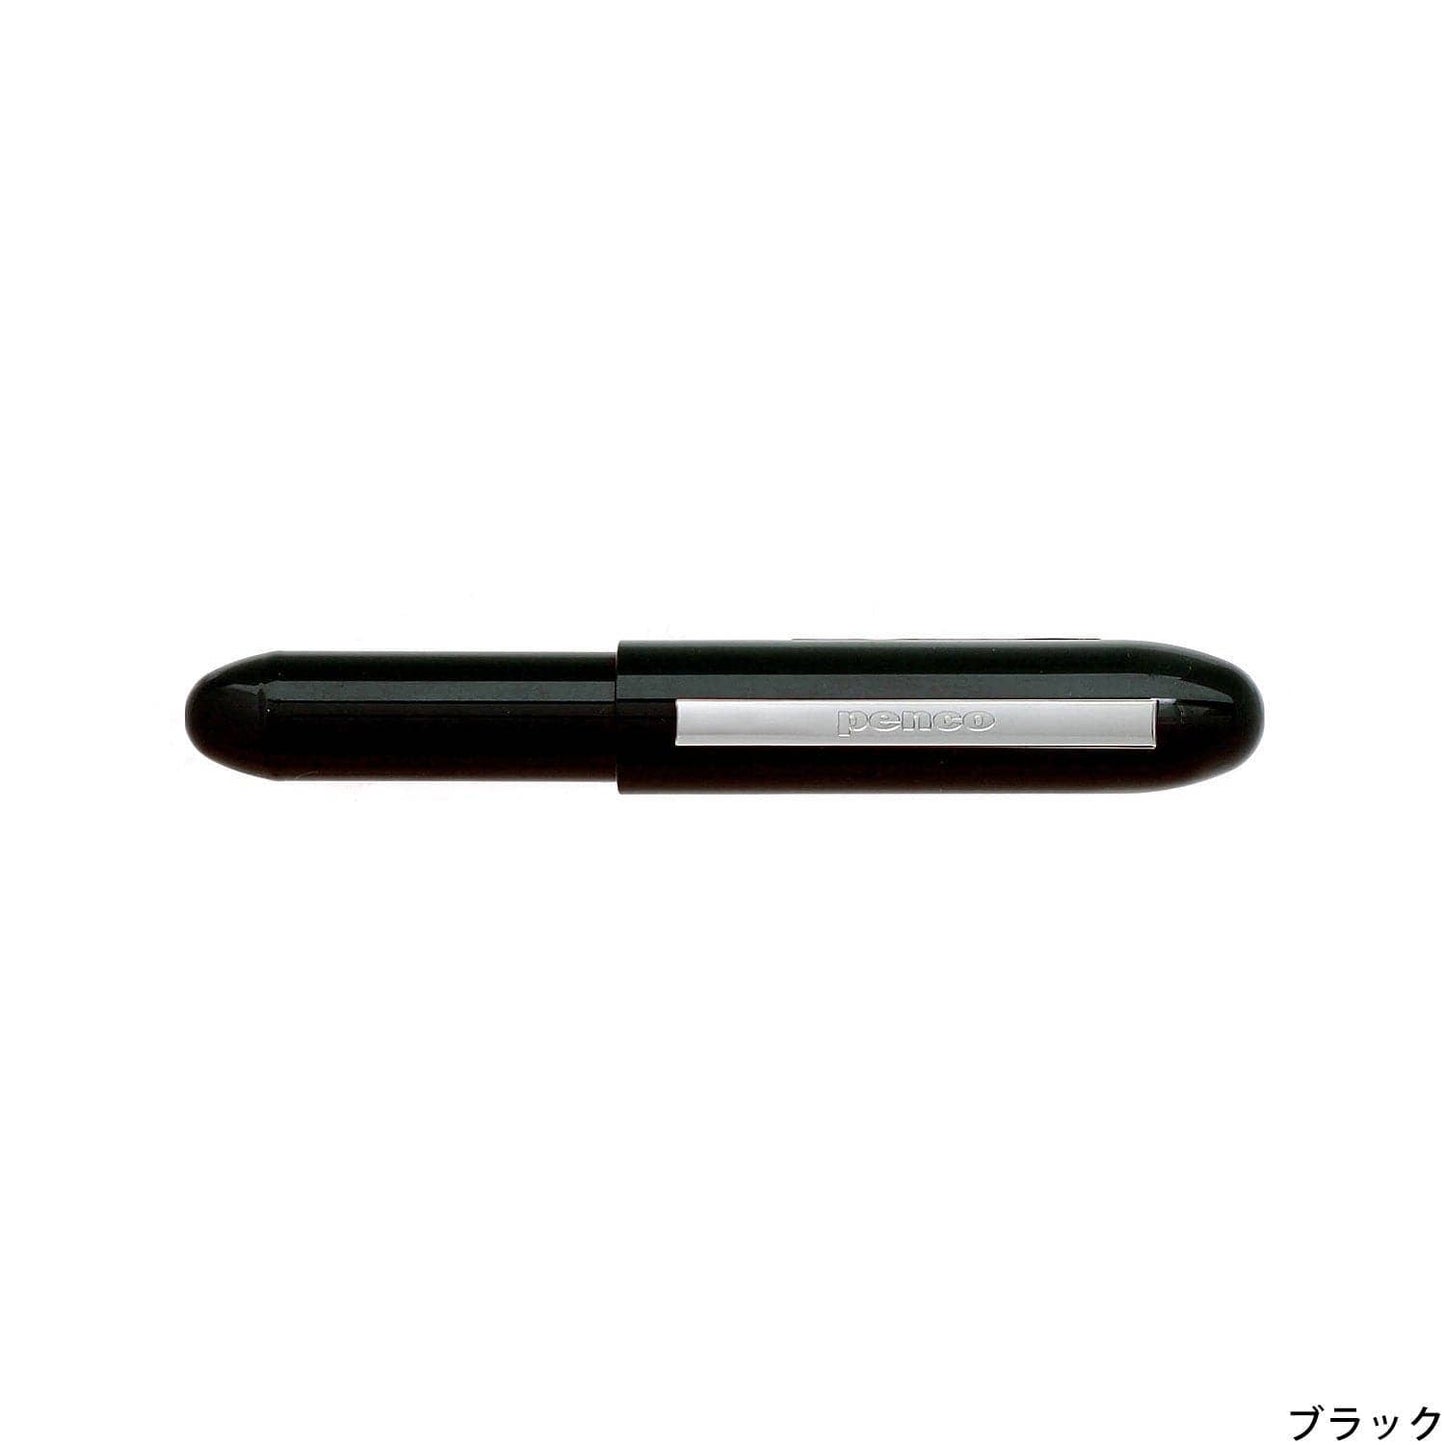 Hightide Penco Bullet Ballpoint Pen Light: Black